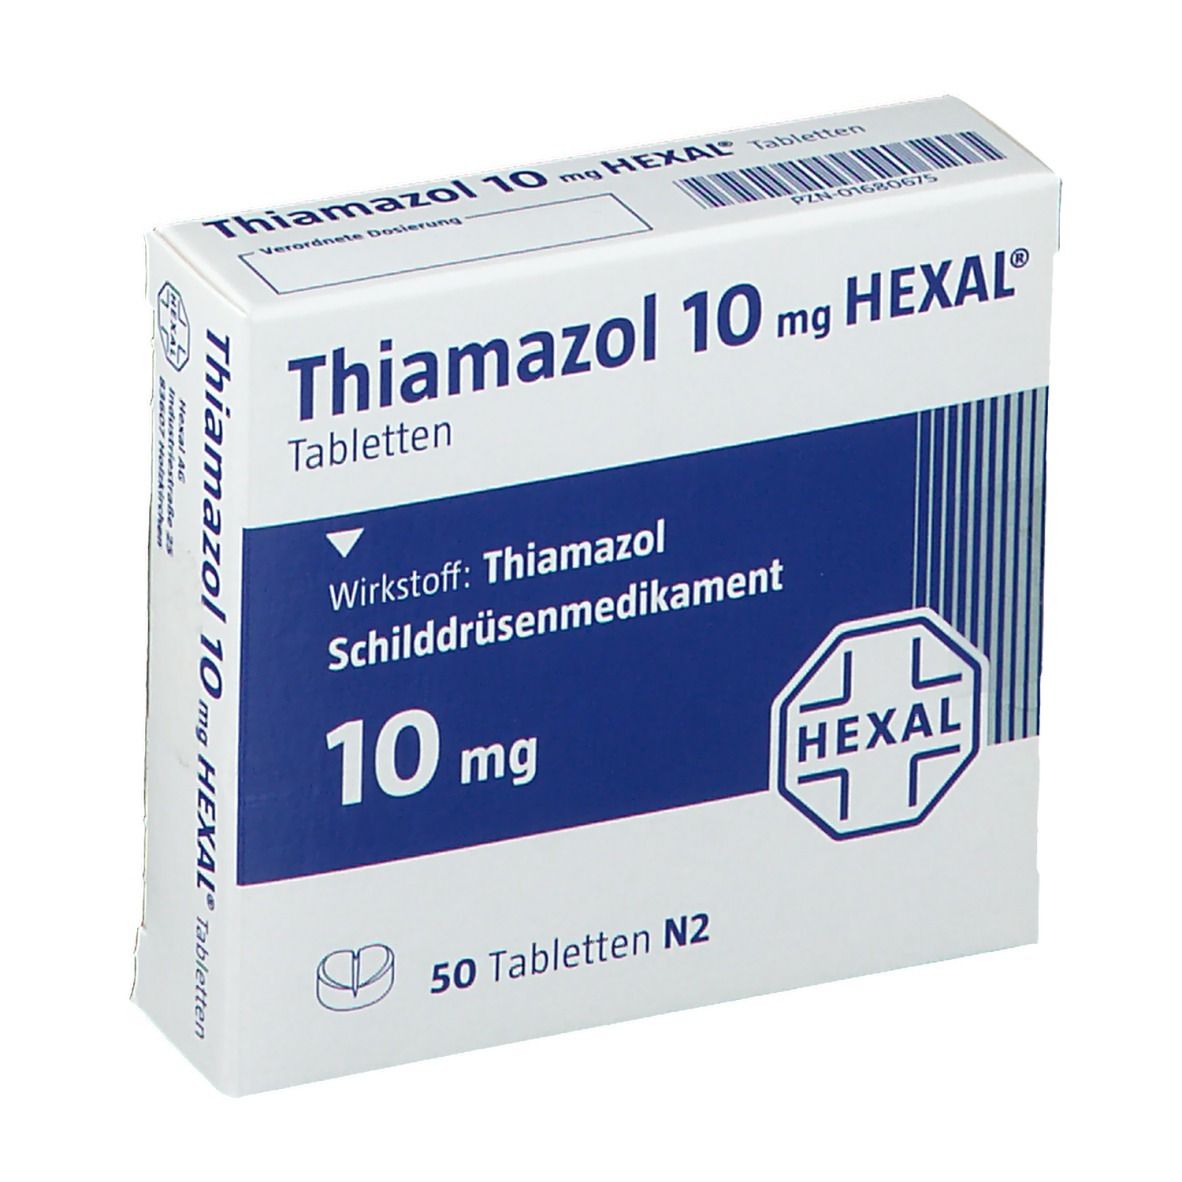 Сотой гексал. MTX Hexal 10 MG. Тиамазол 10 мг. Hexal 10 MG таблетки метадон. Тиамазол 20.